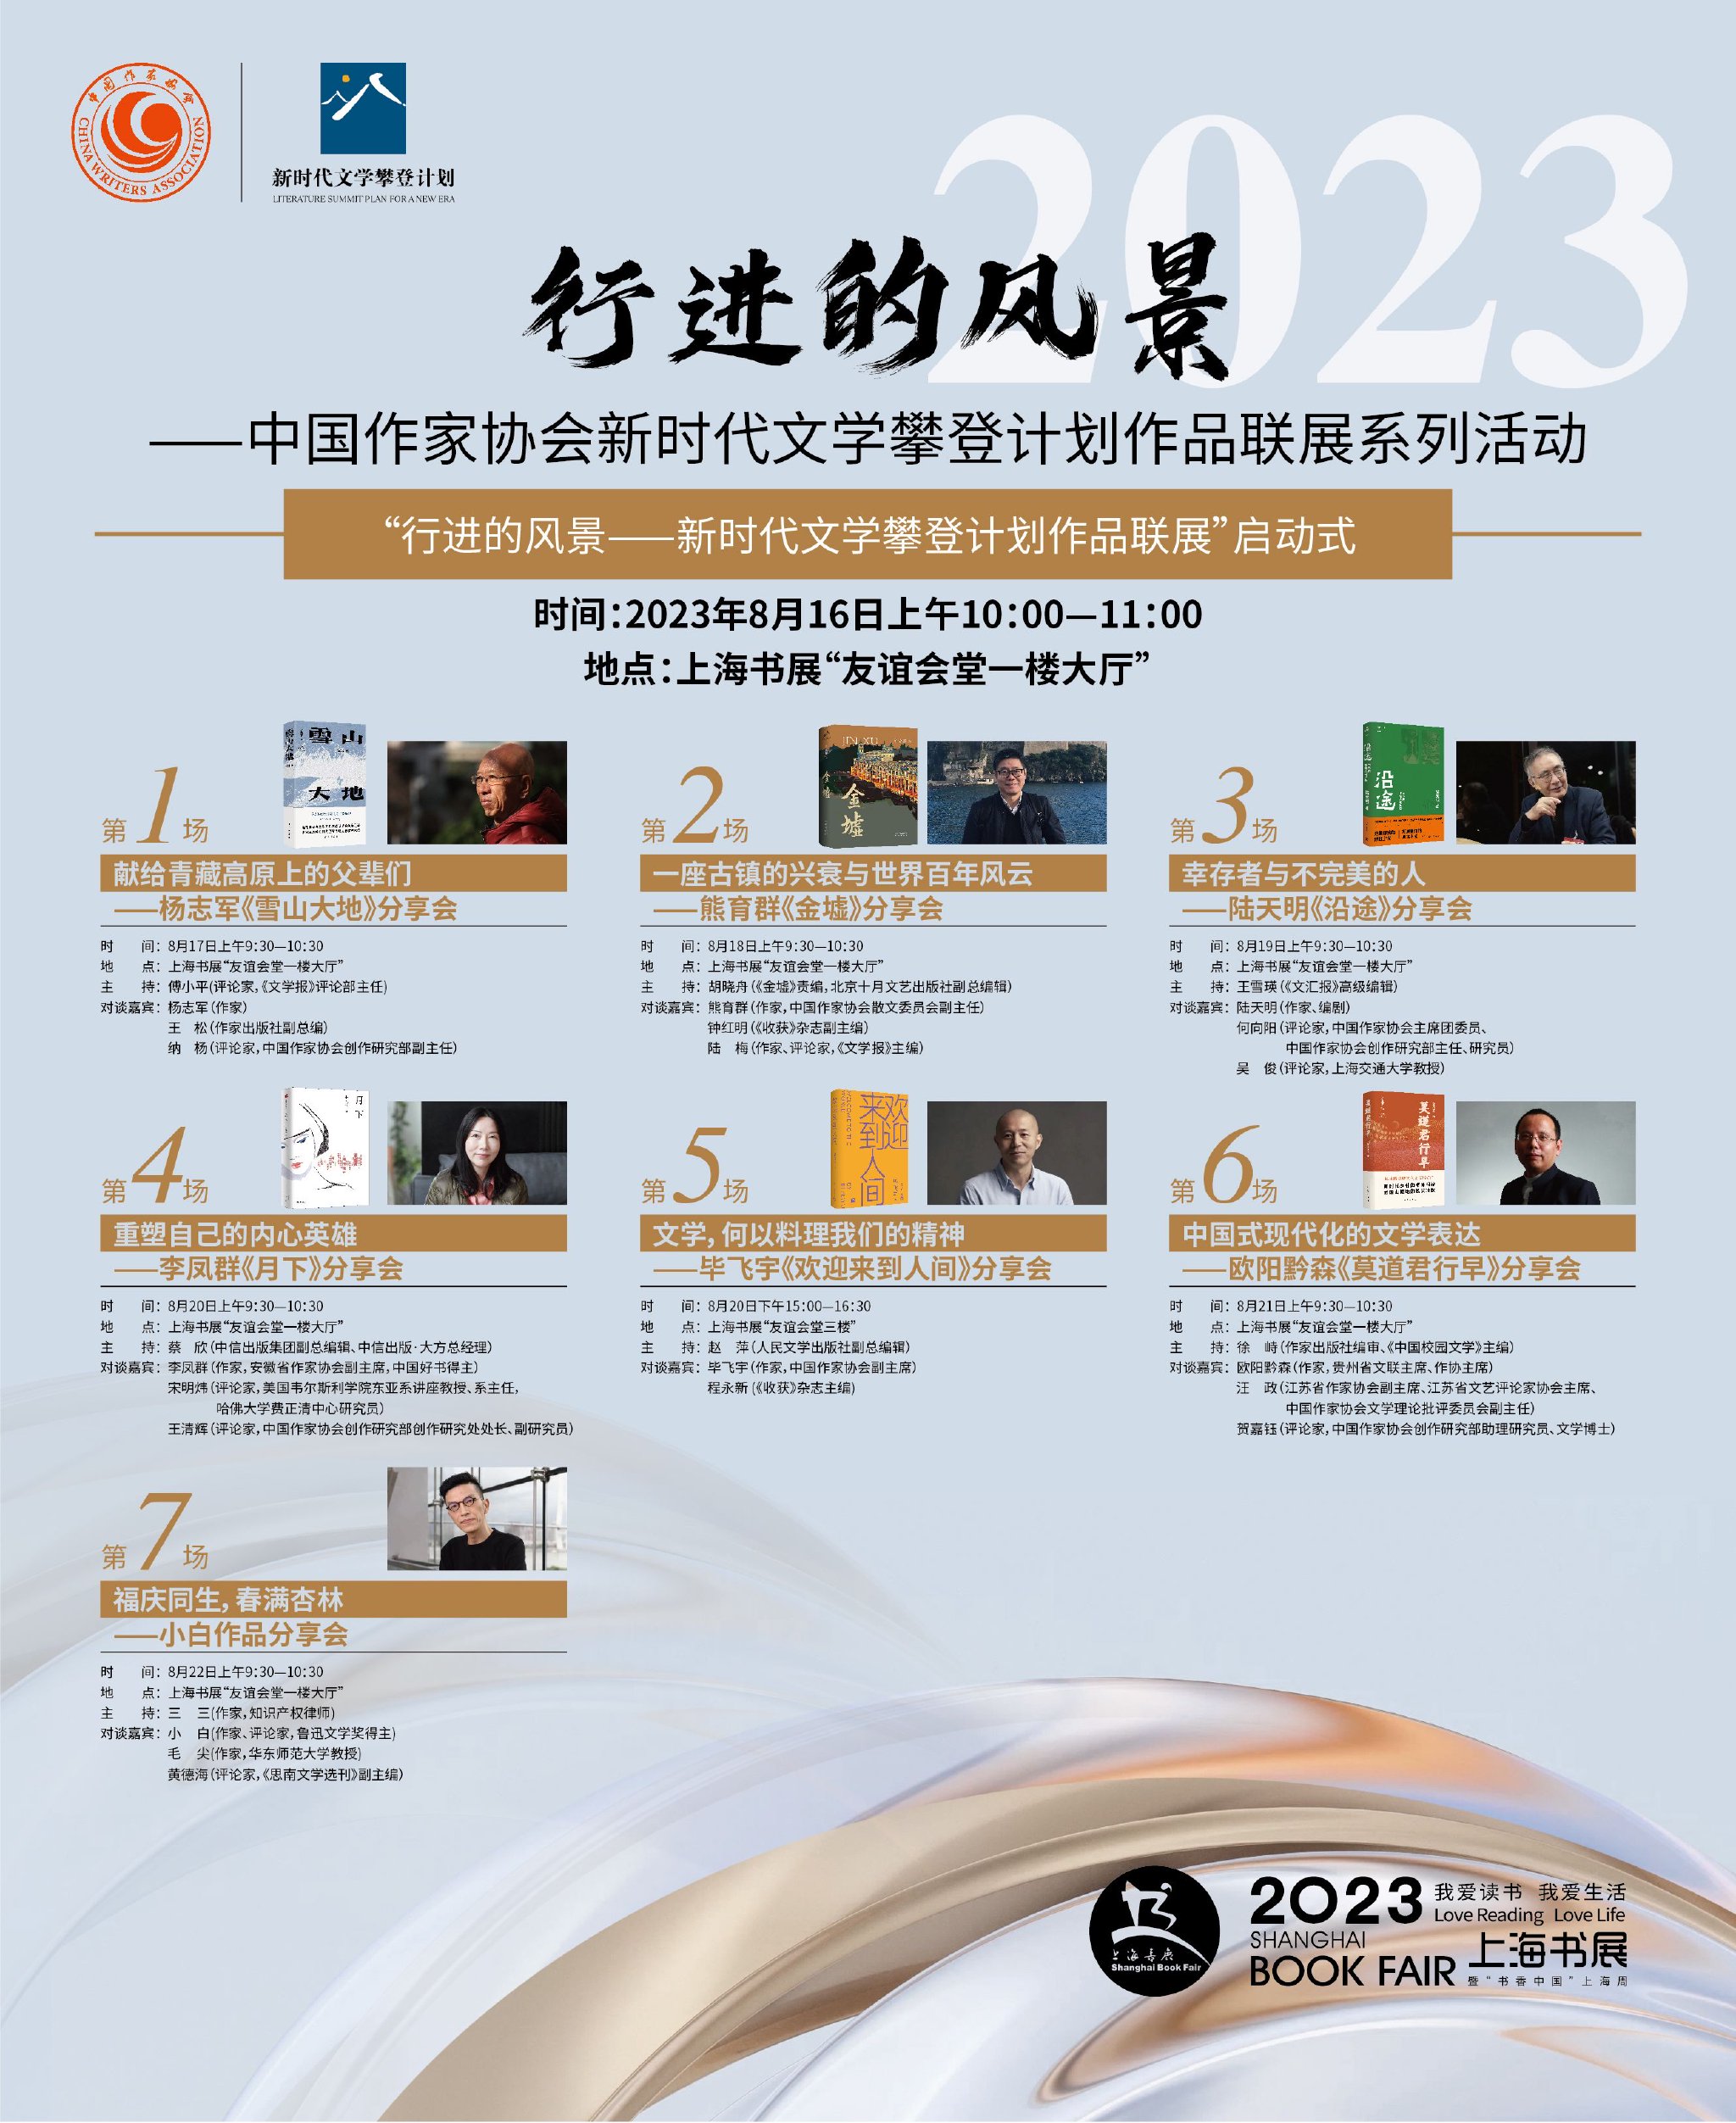 行进的风景——中国作家协会新时代文学攀登计划作品联展活动